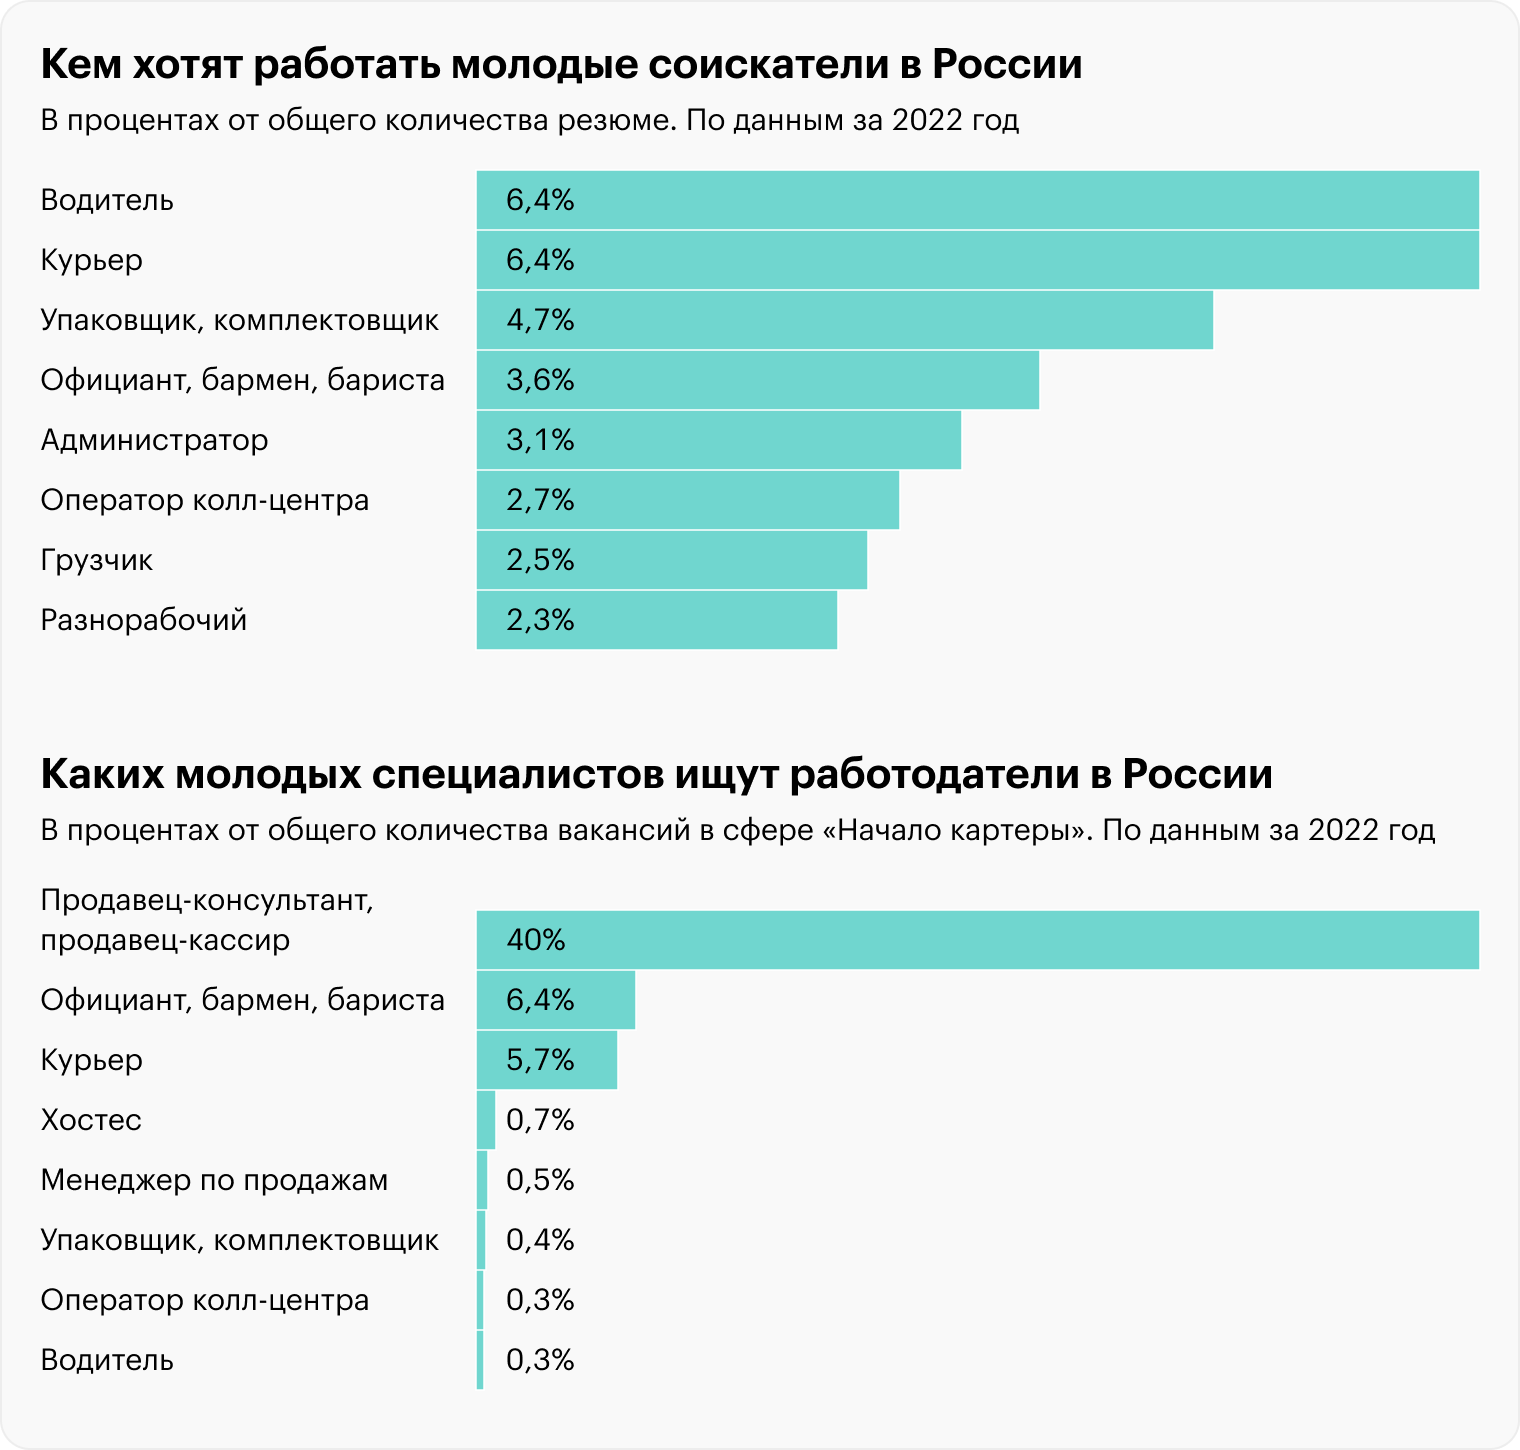 Сравнительный анализ показывает, что ожидания работников и работодателей различаются. Источник: hh.ru